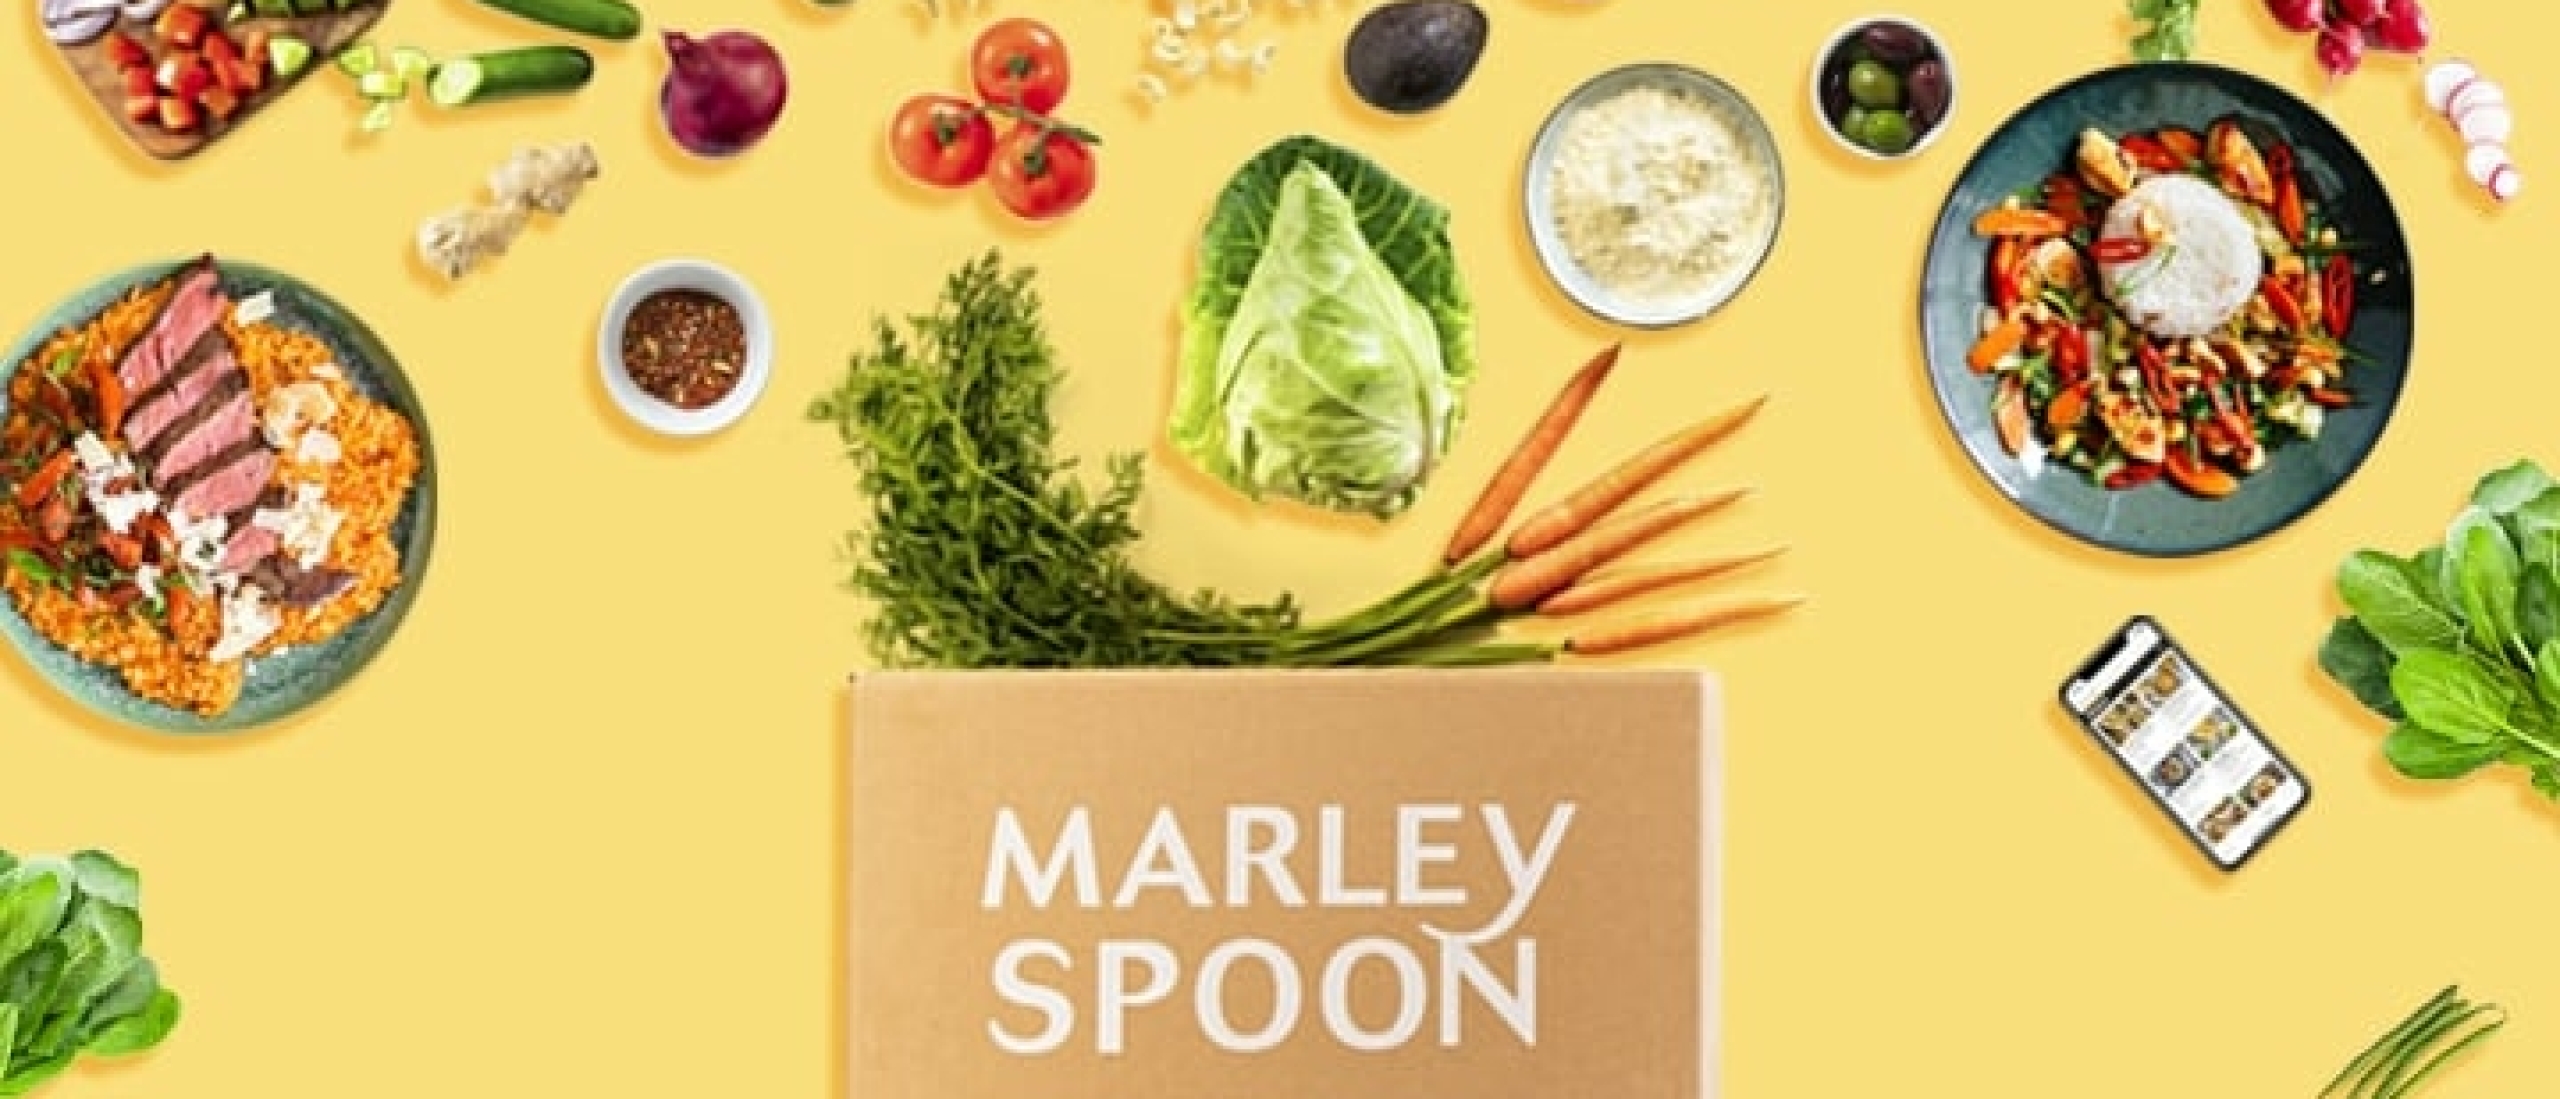 Marley Spoon gratis box ontvangen